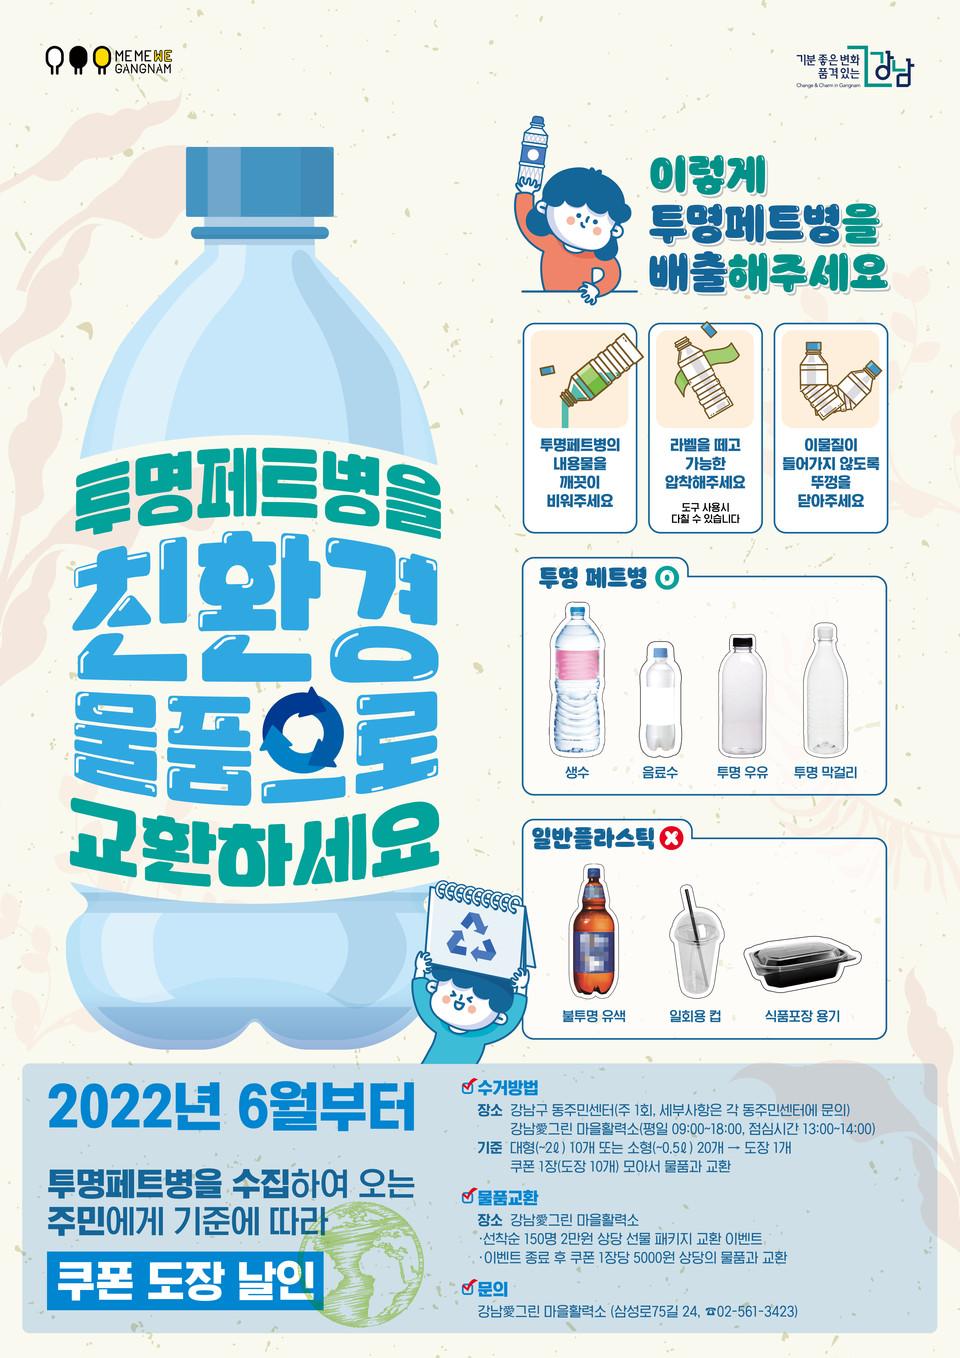 강남구청 투명페트병 교환 포스터